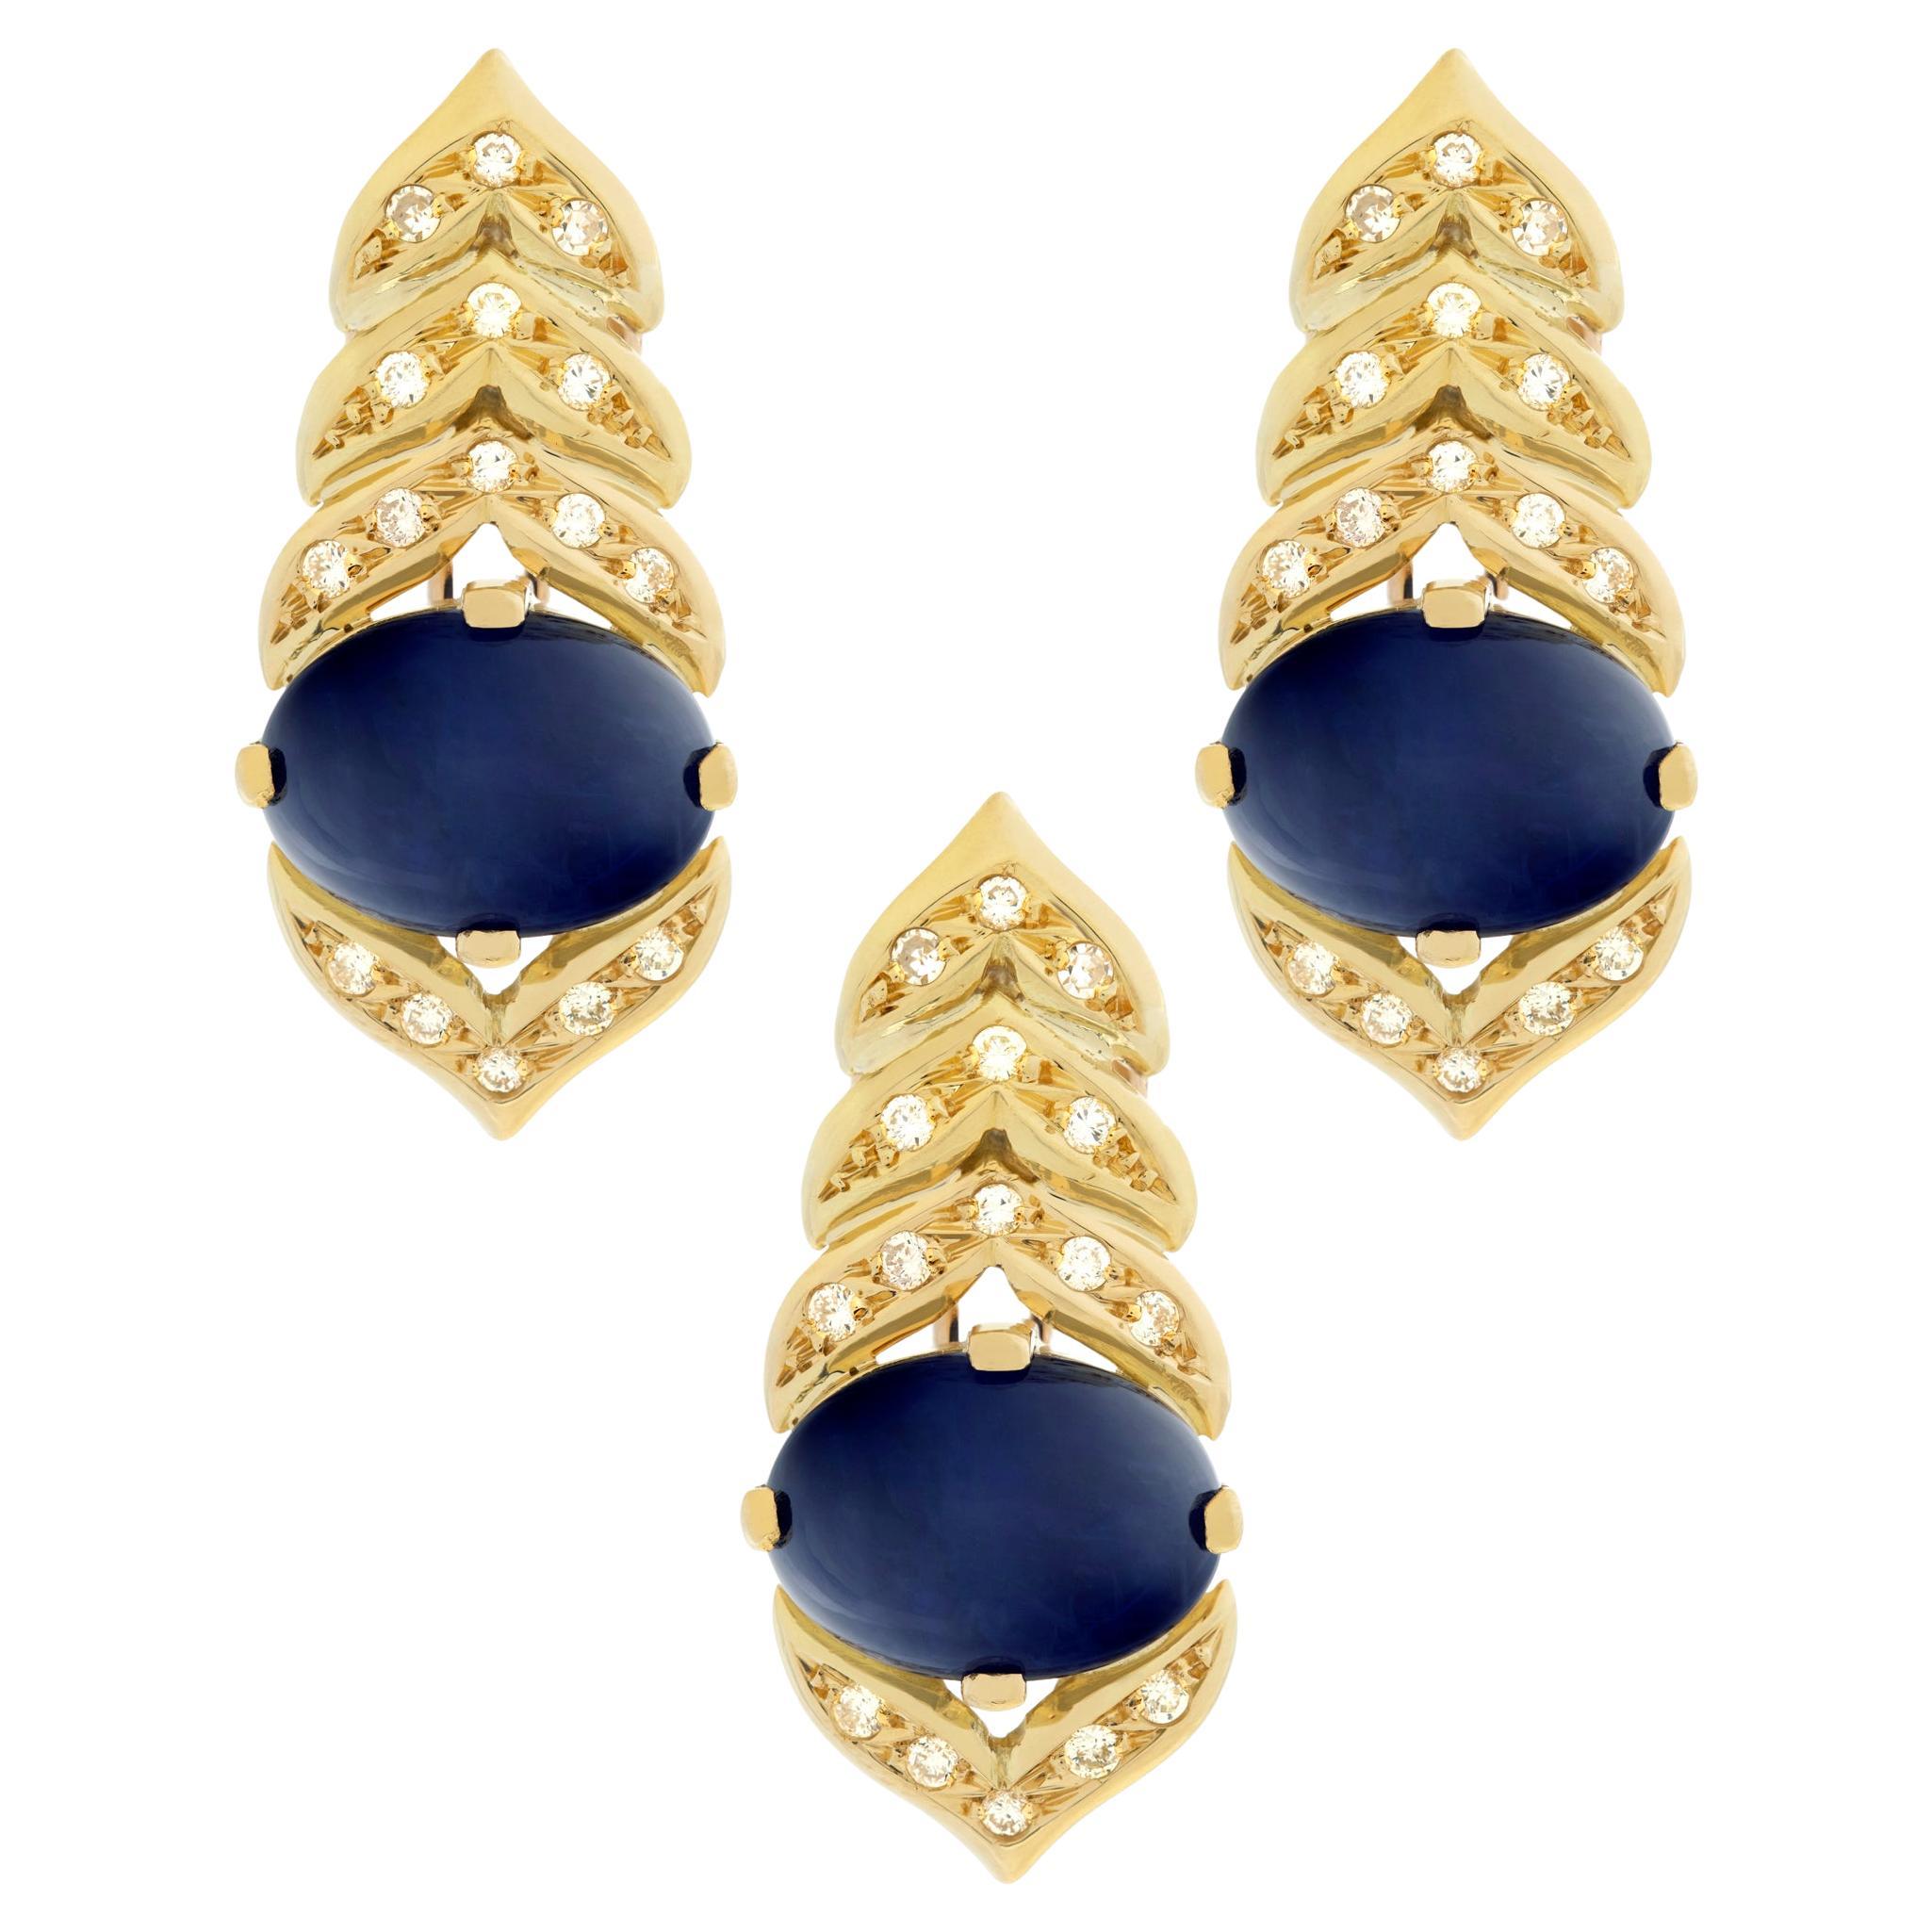 Cabochon Sapphire & Round Cut Diamonds 3 Pieces 18k Gold Pendant & Earrings